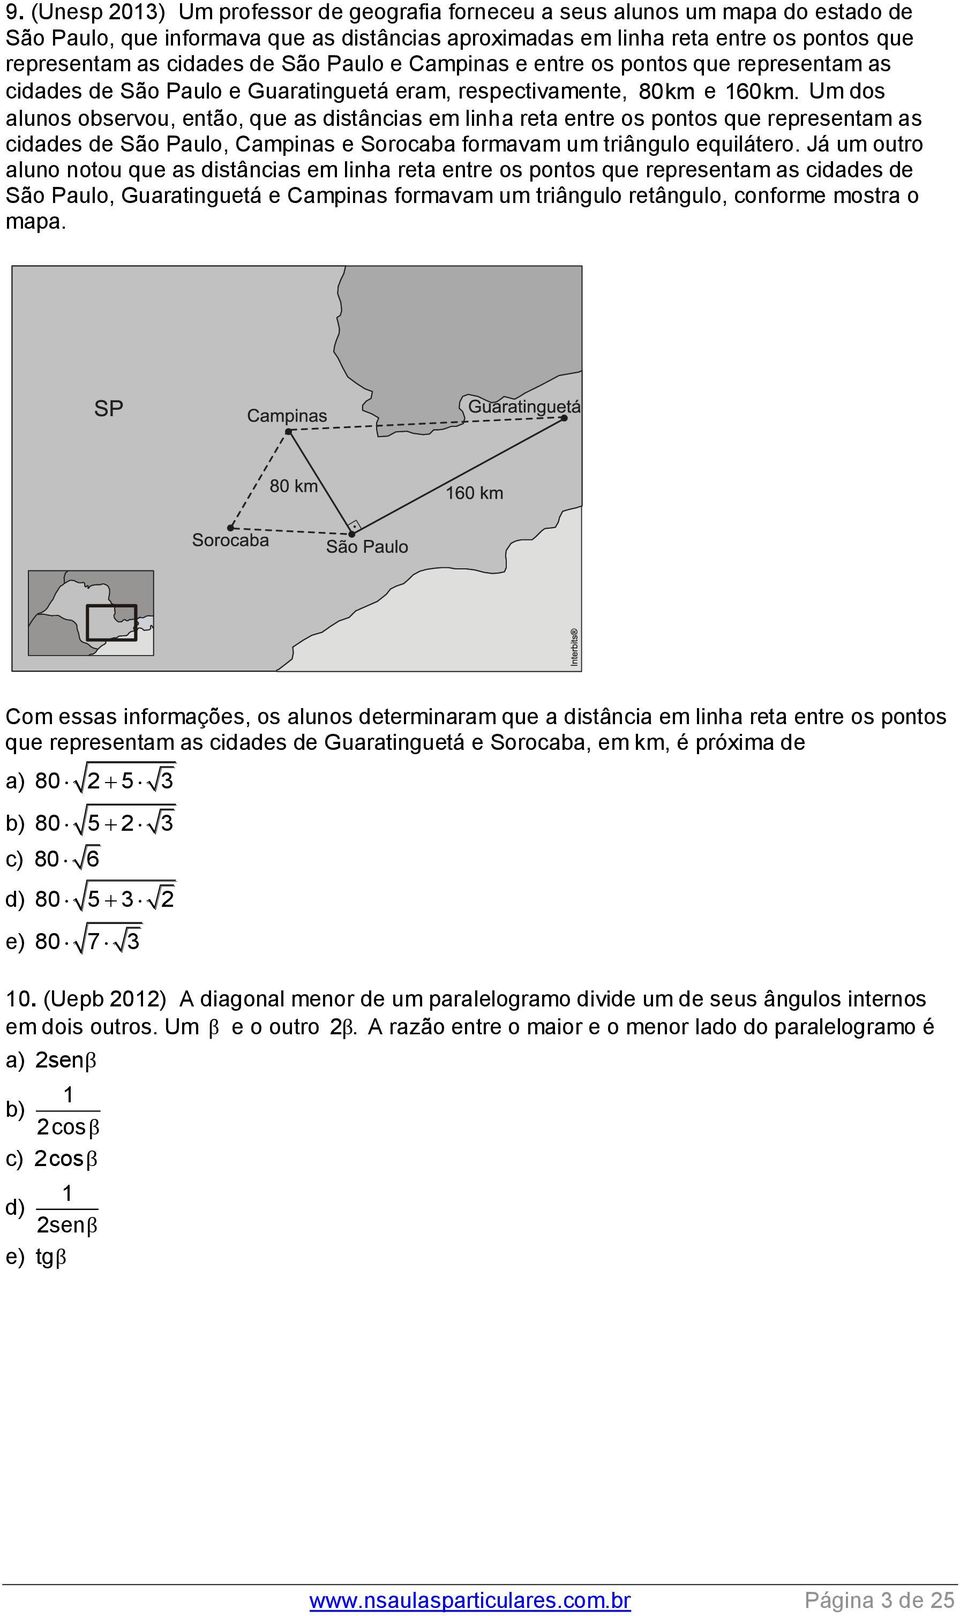 Um dos alunos observou, então, que as distâncias em linha reta entre os pontos que representam as cidades de São Paulo, Campinas e Sorocaba formavam um triângulo equilátero.